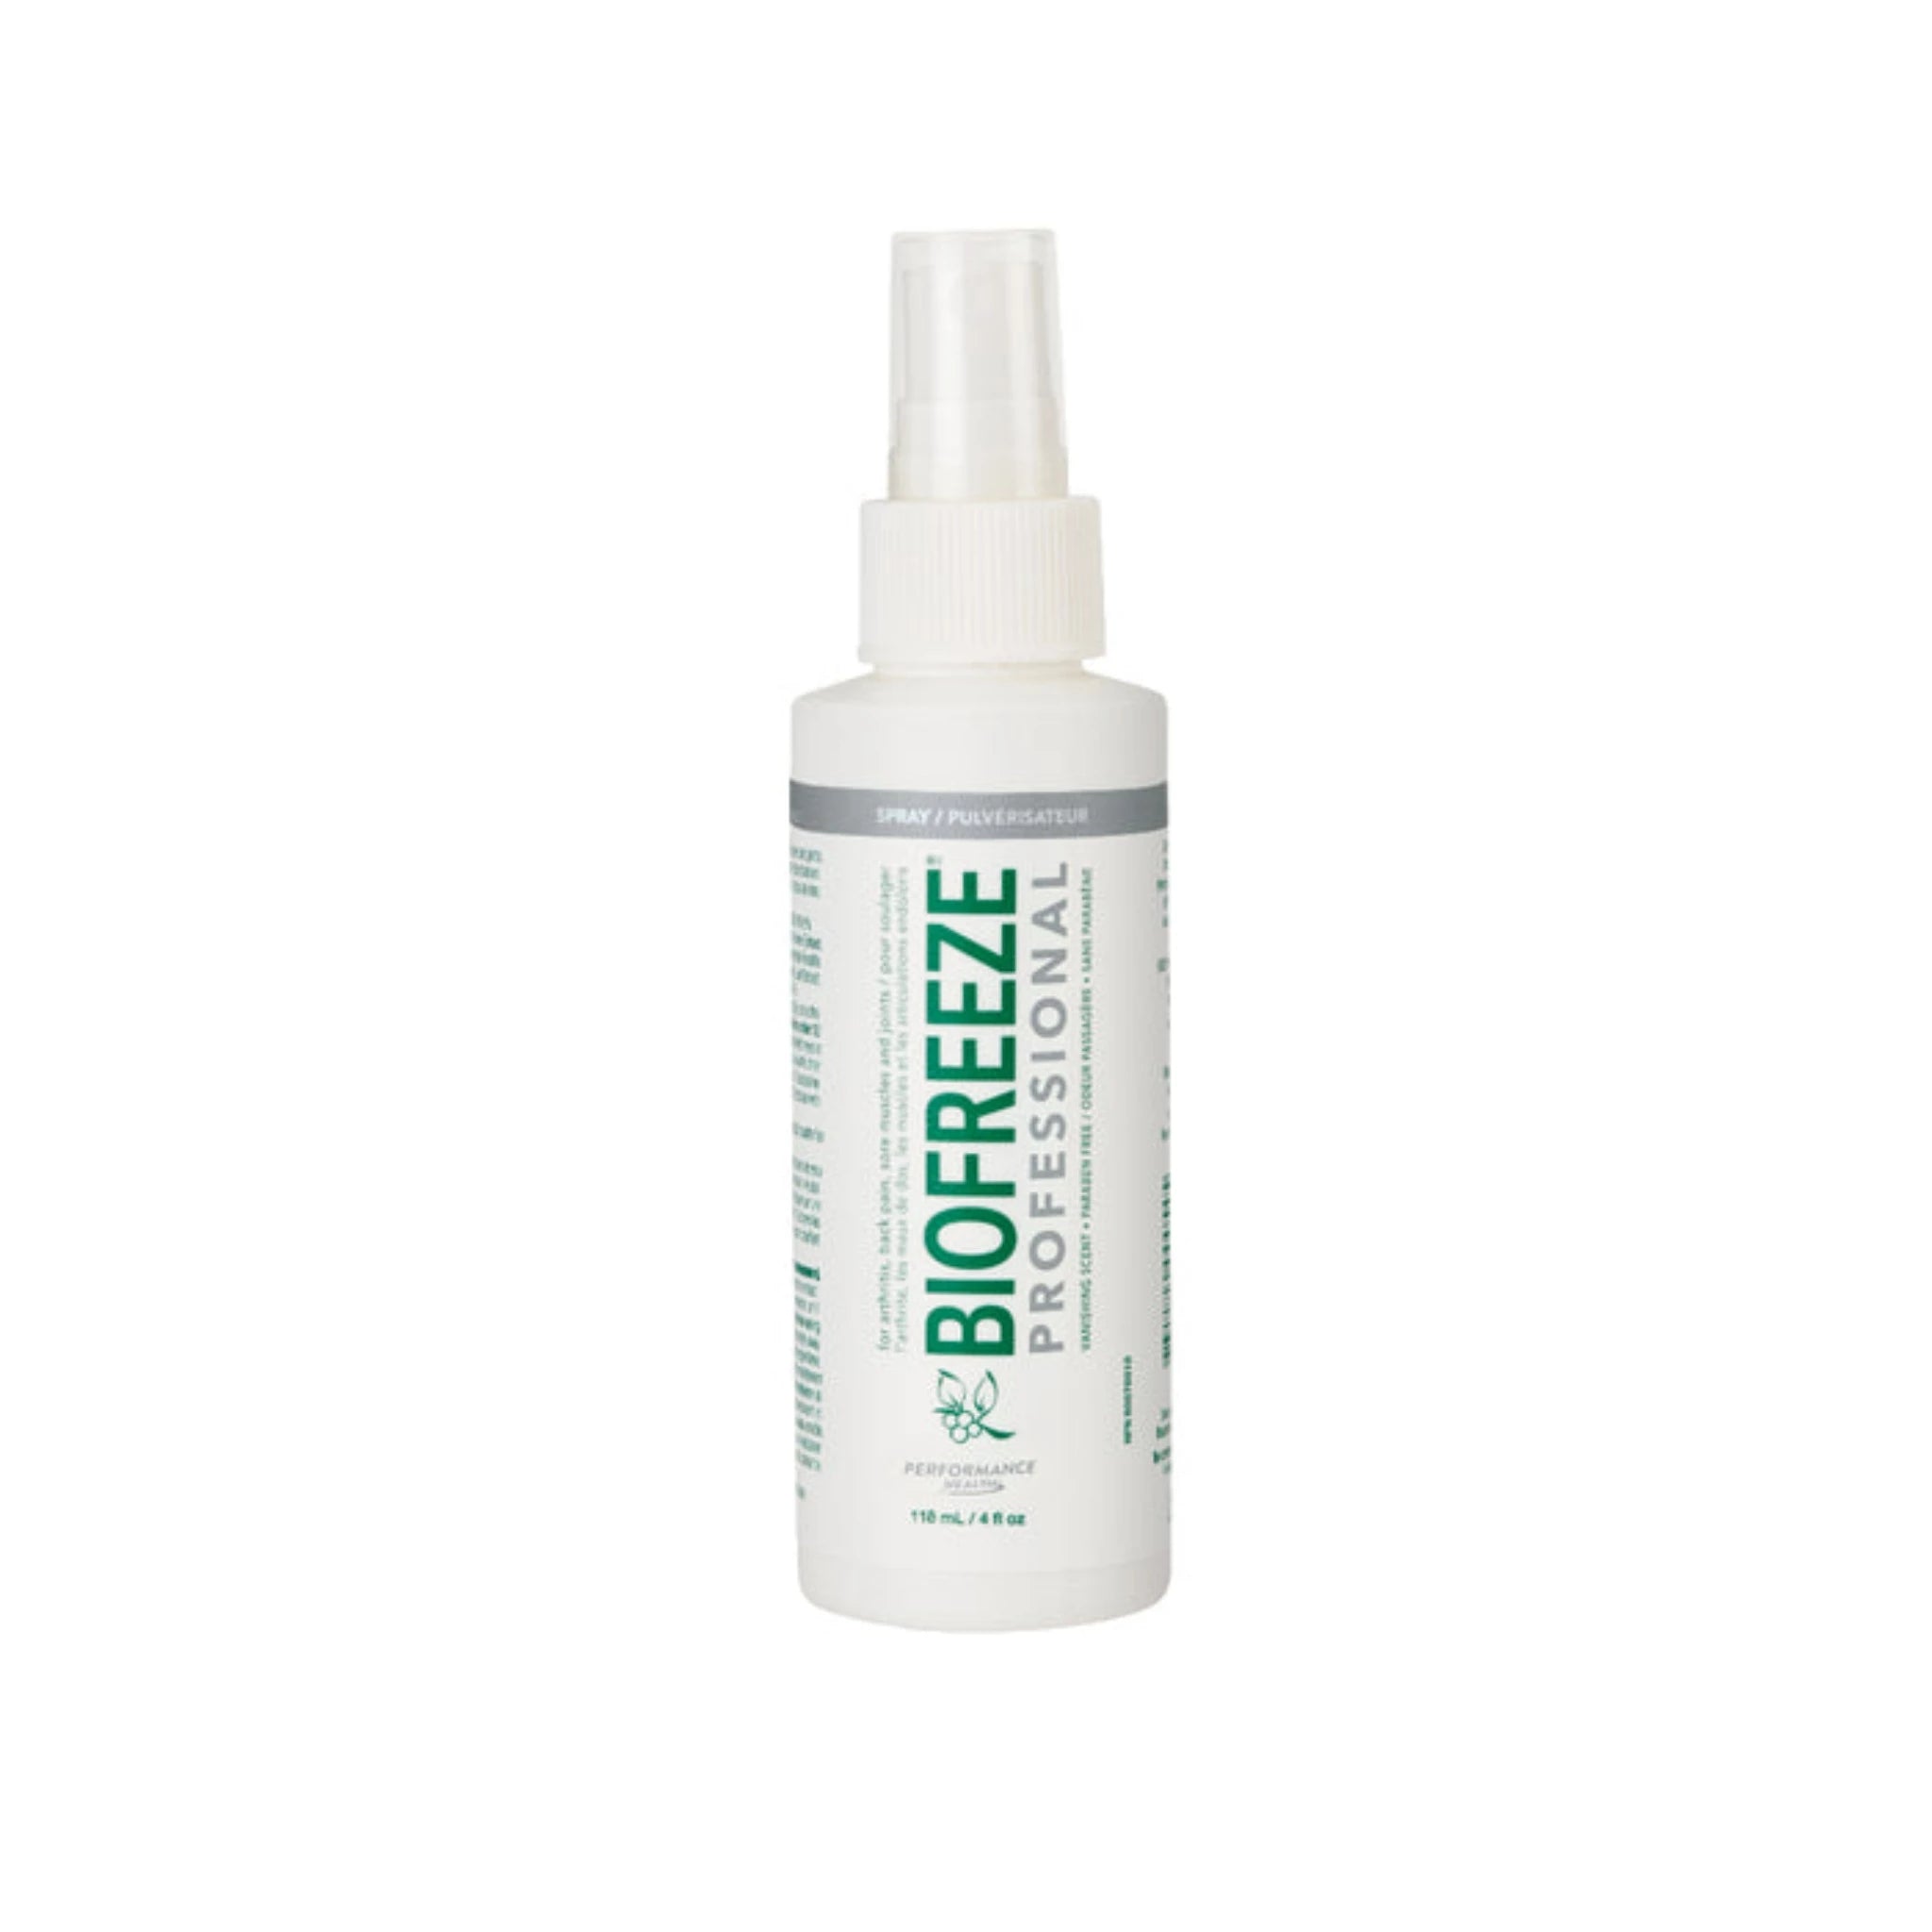 Biofreeze Professional Spray 118 ml